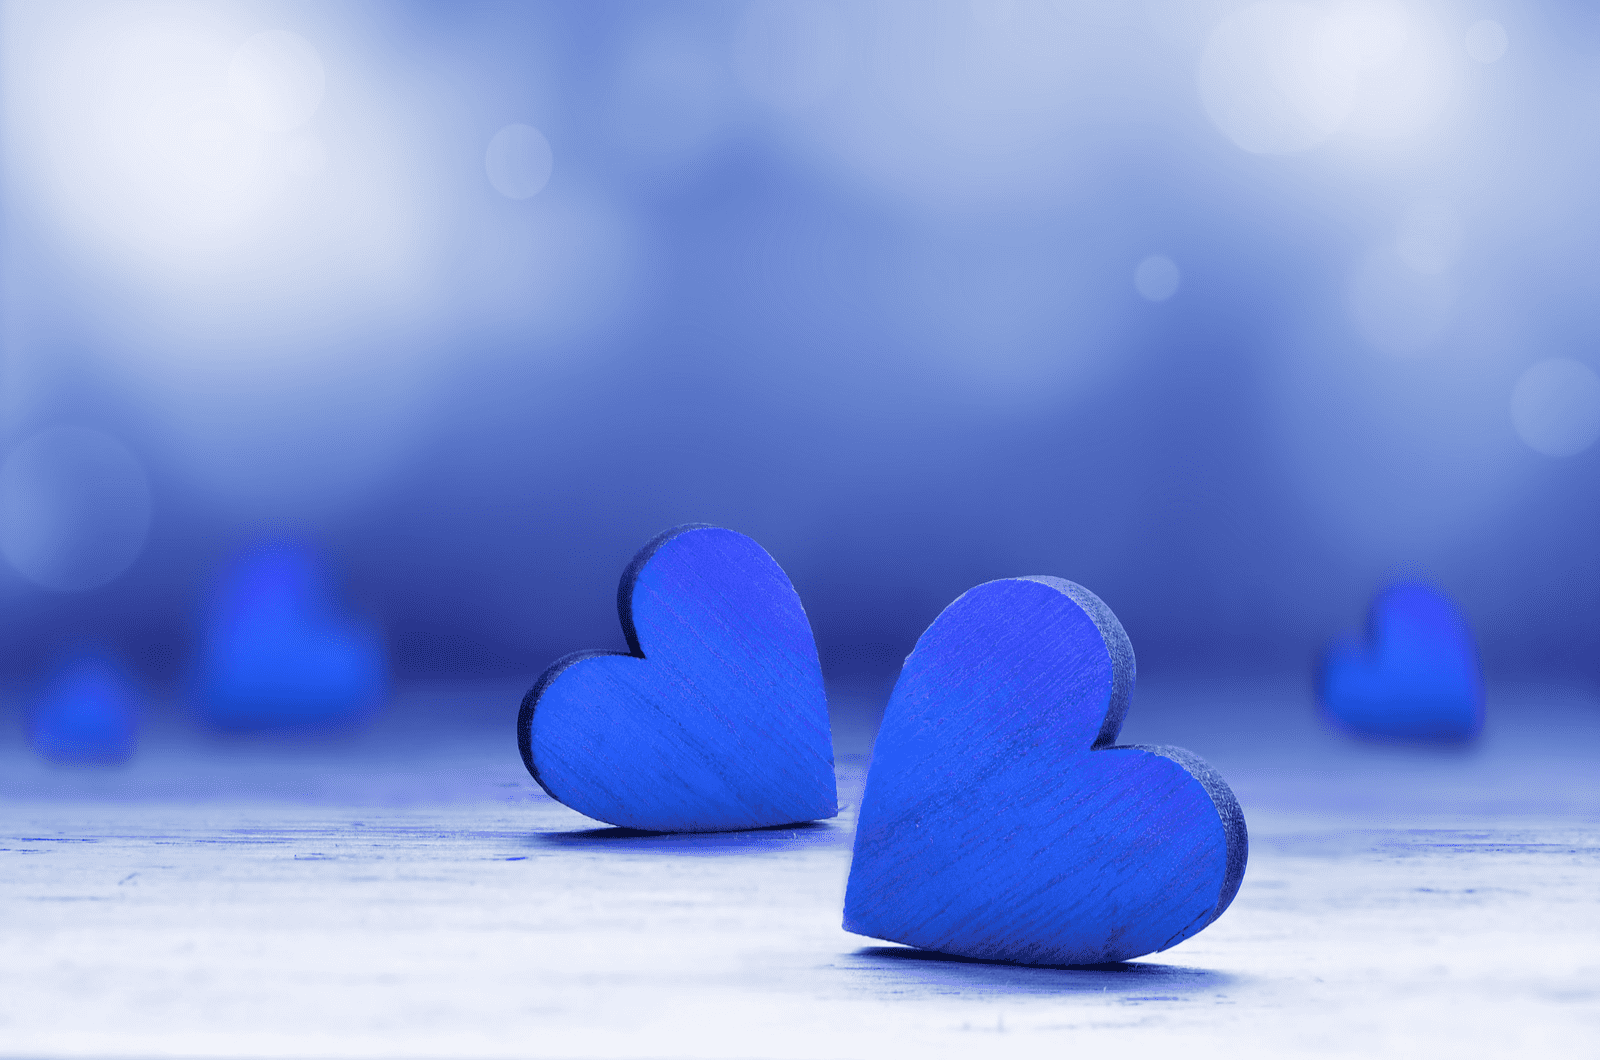 Abbildung mit blauen Herzen